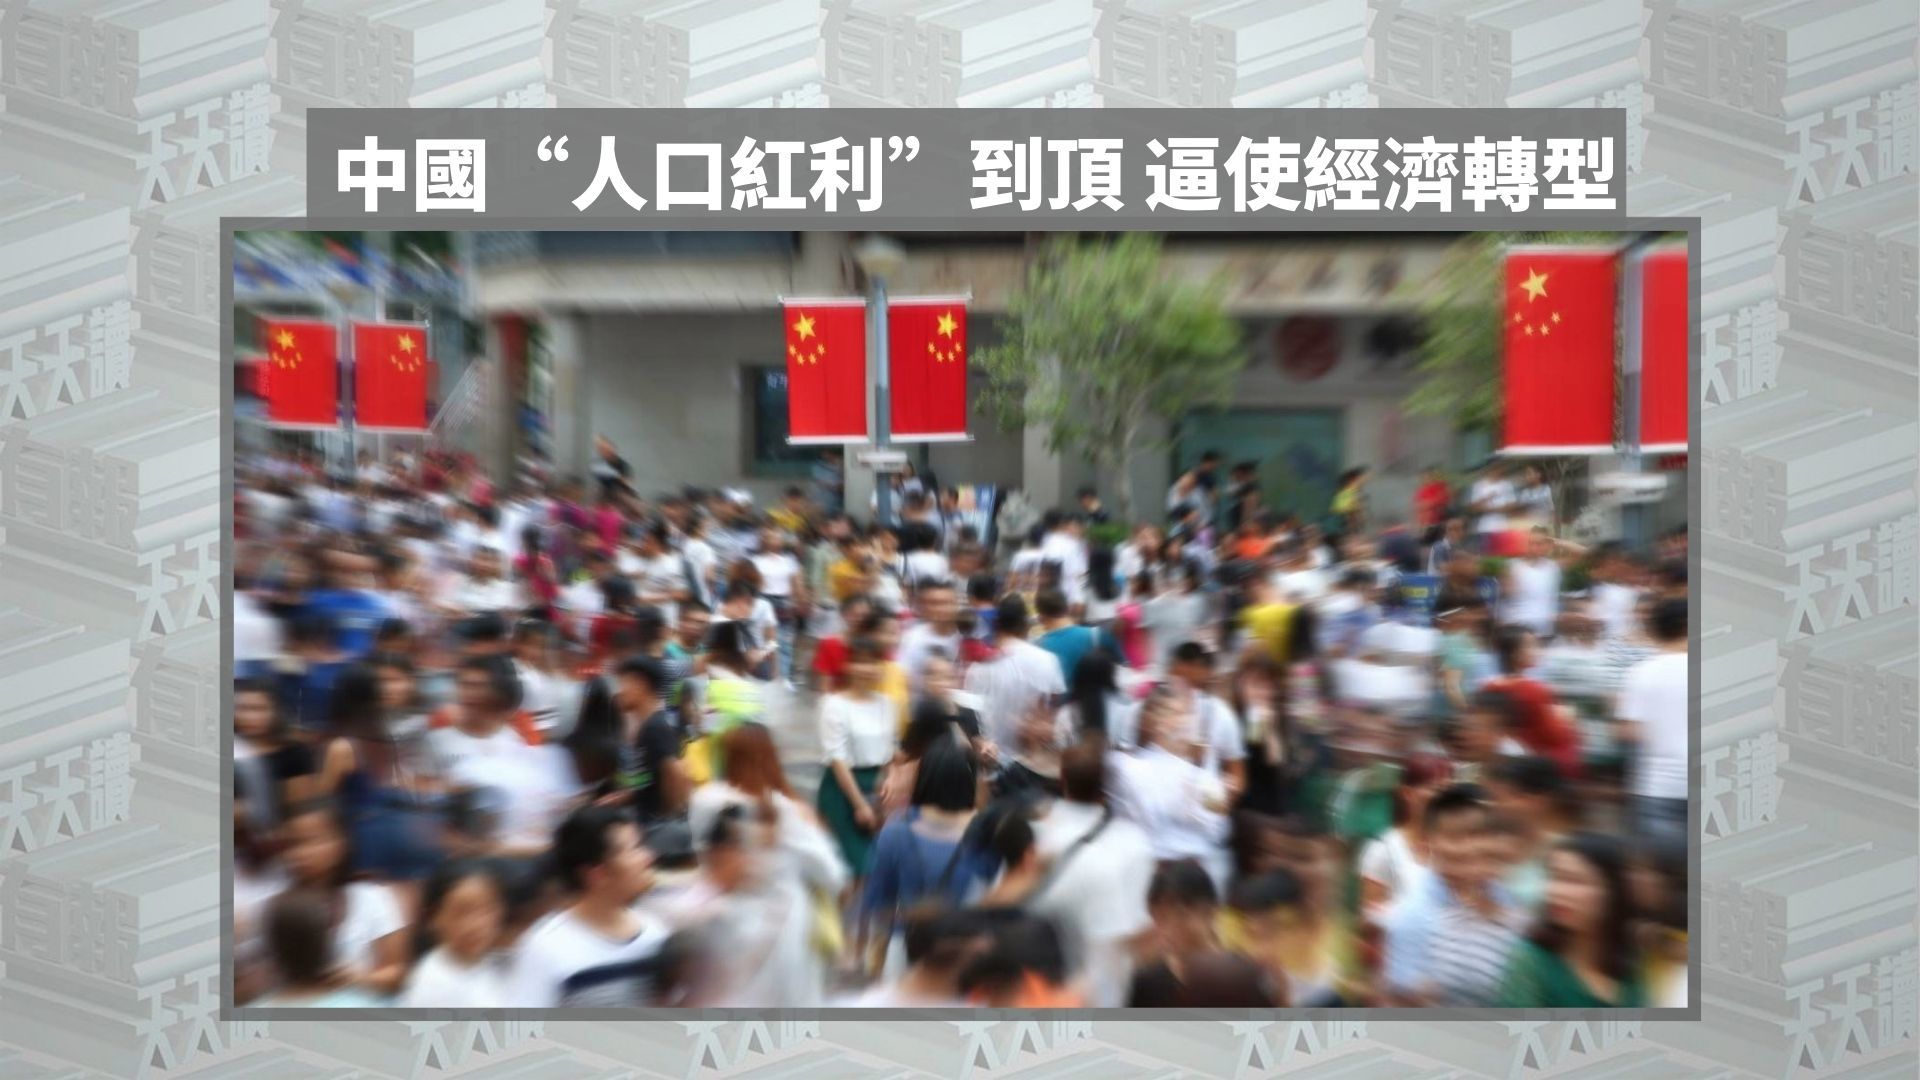 中国“人口红利”到顶 逼使经济转型